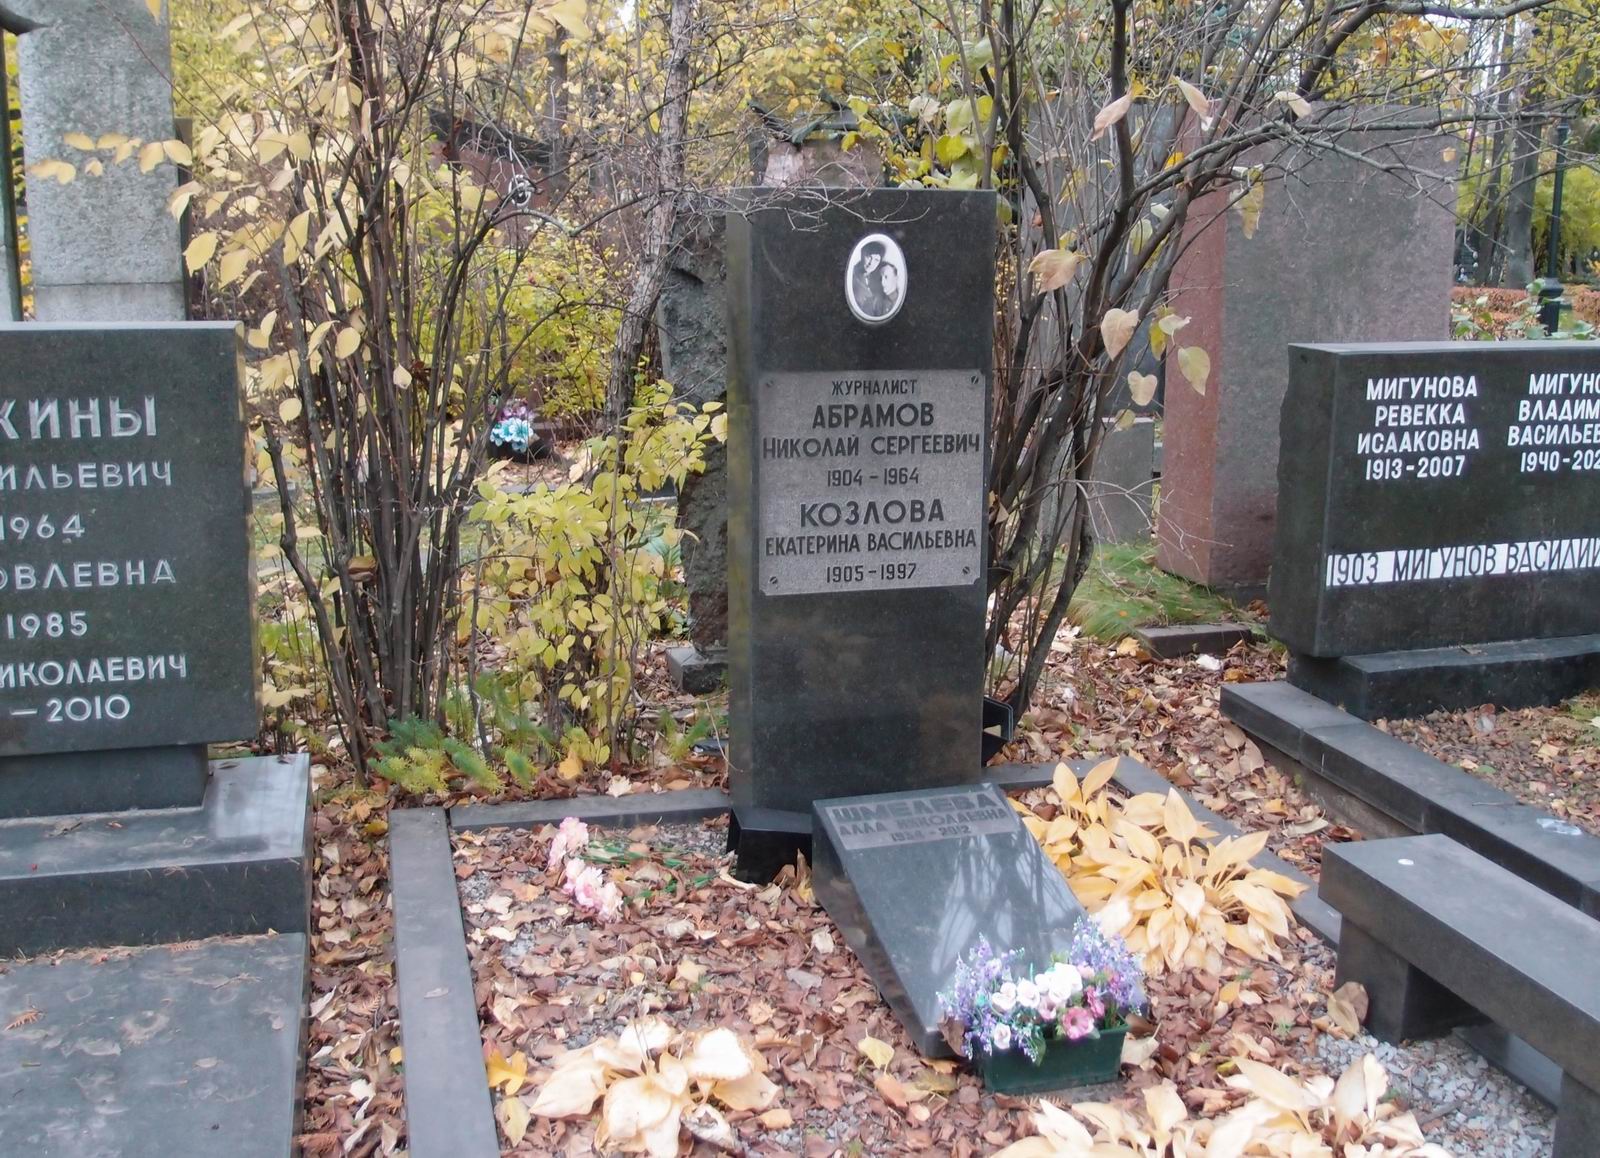 Памятник на могиле Абрамова Н.С. (1904-1964), на Новодевичьем кладбище (6-9-4).